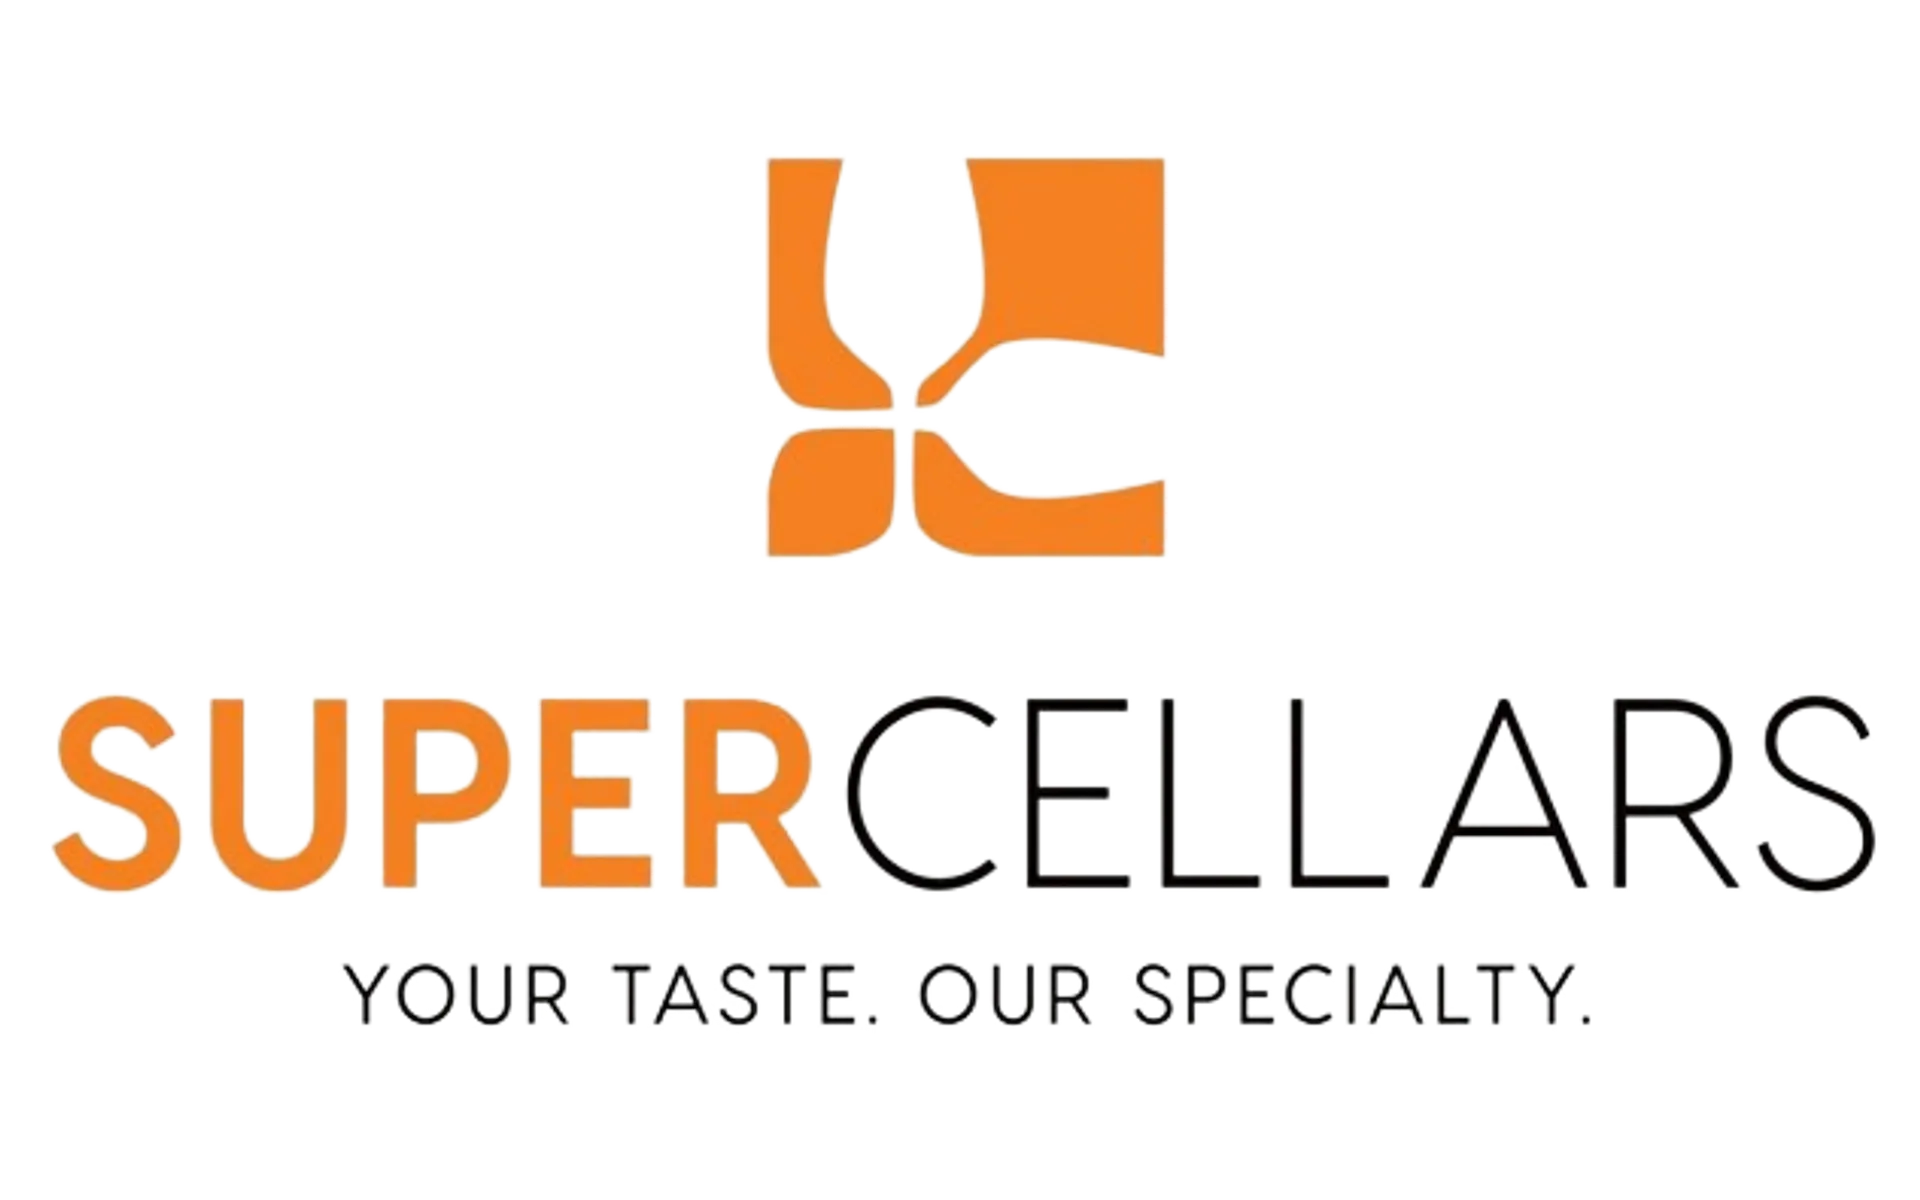 SUPER CELLARS logo of current flyer